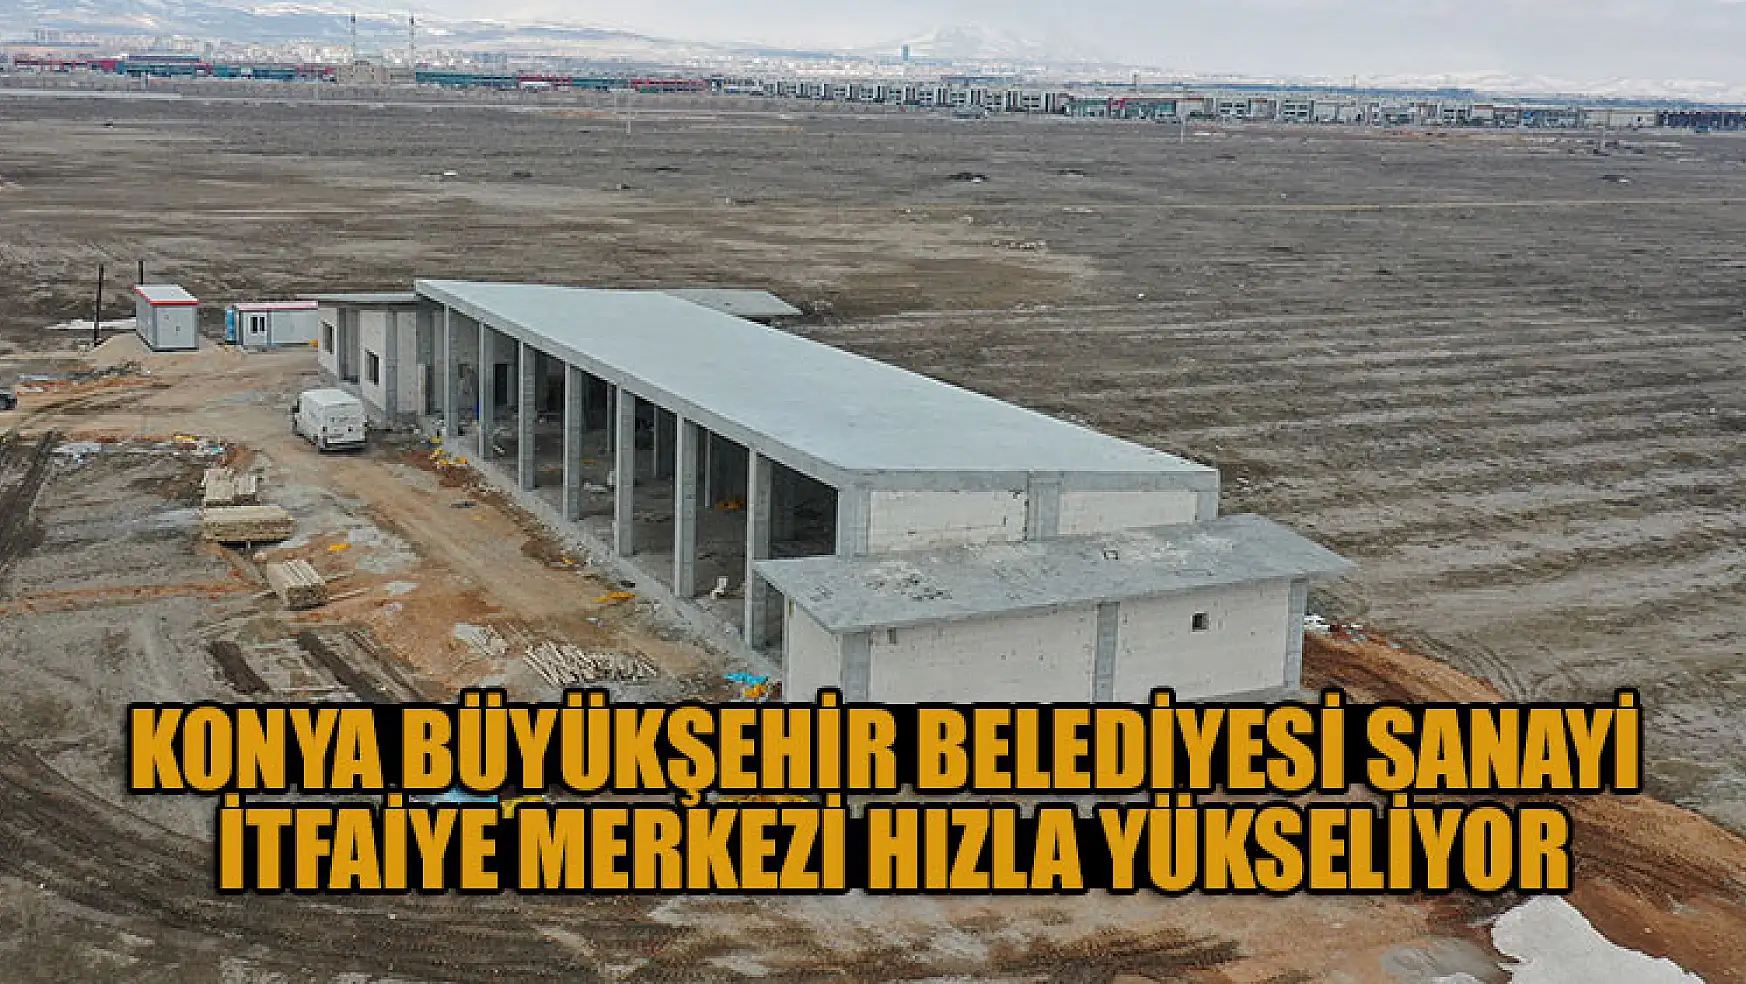 Konya Büyükşehir Belediyesi Sanayi İtfaiye Merkezi Hızla Yükseliyor